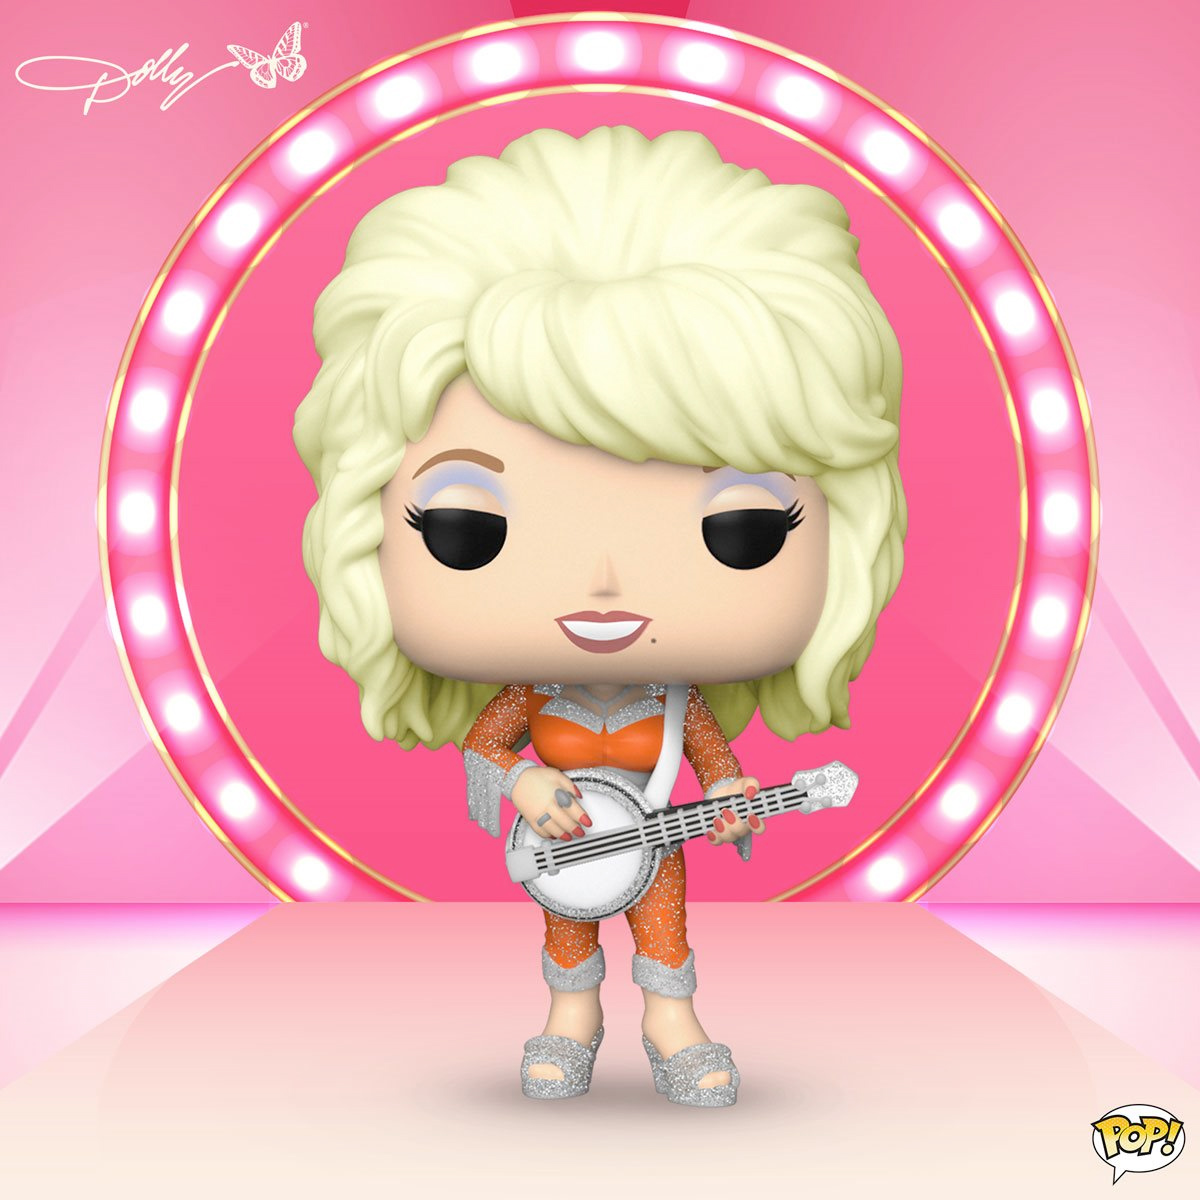 Boneca Pop! Rocks Dolly Parton, a Rainha da Música Country